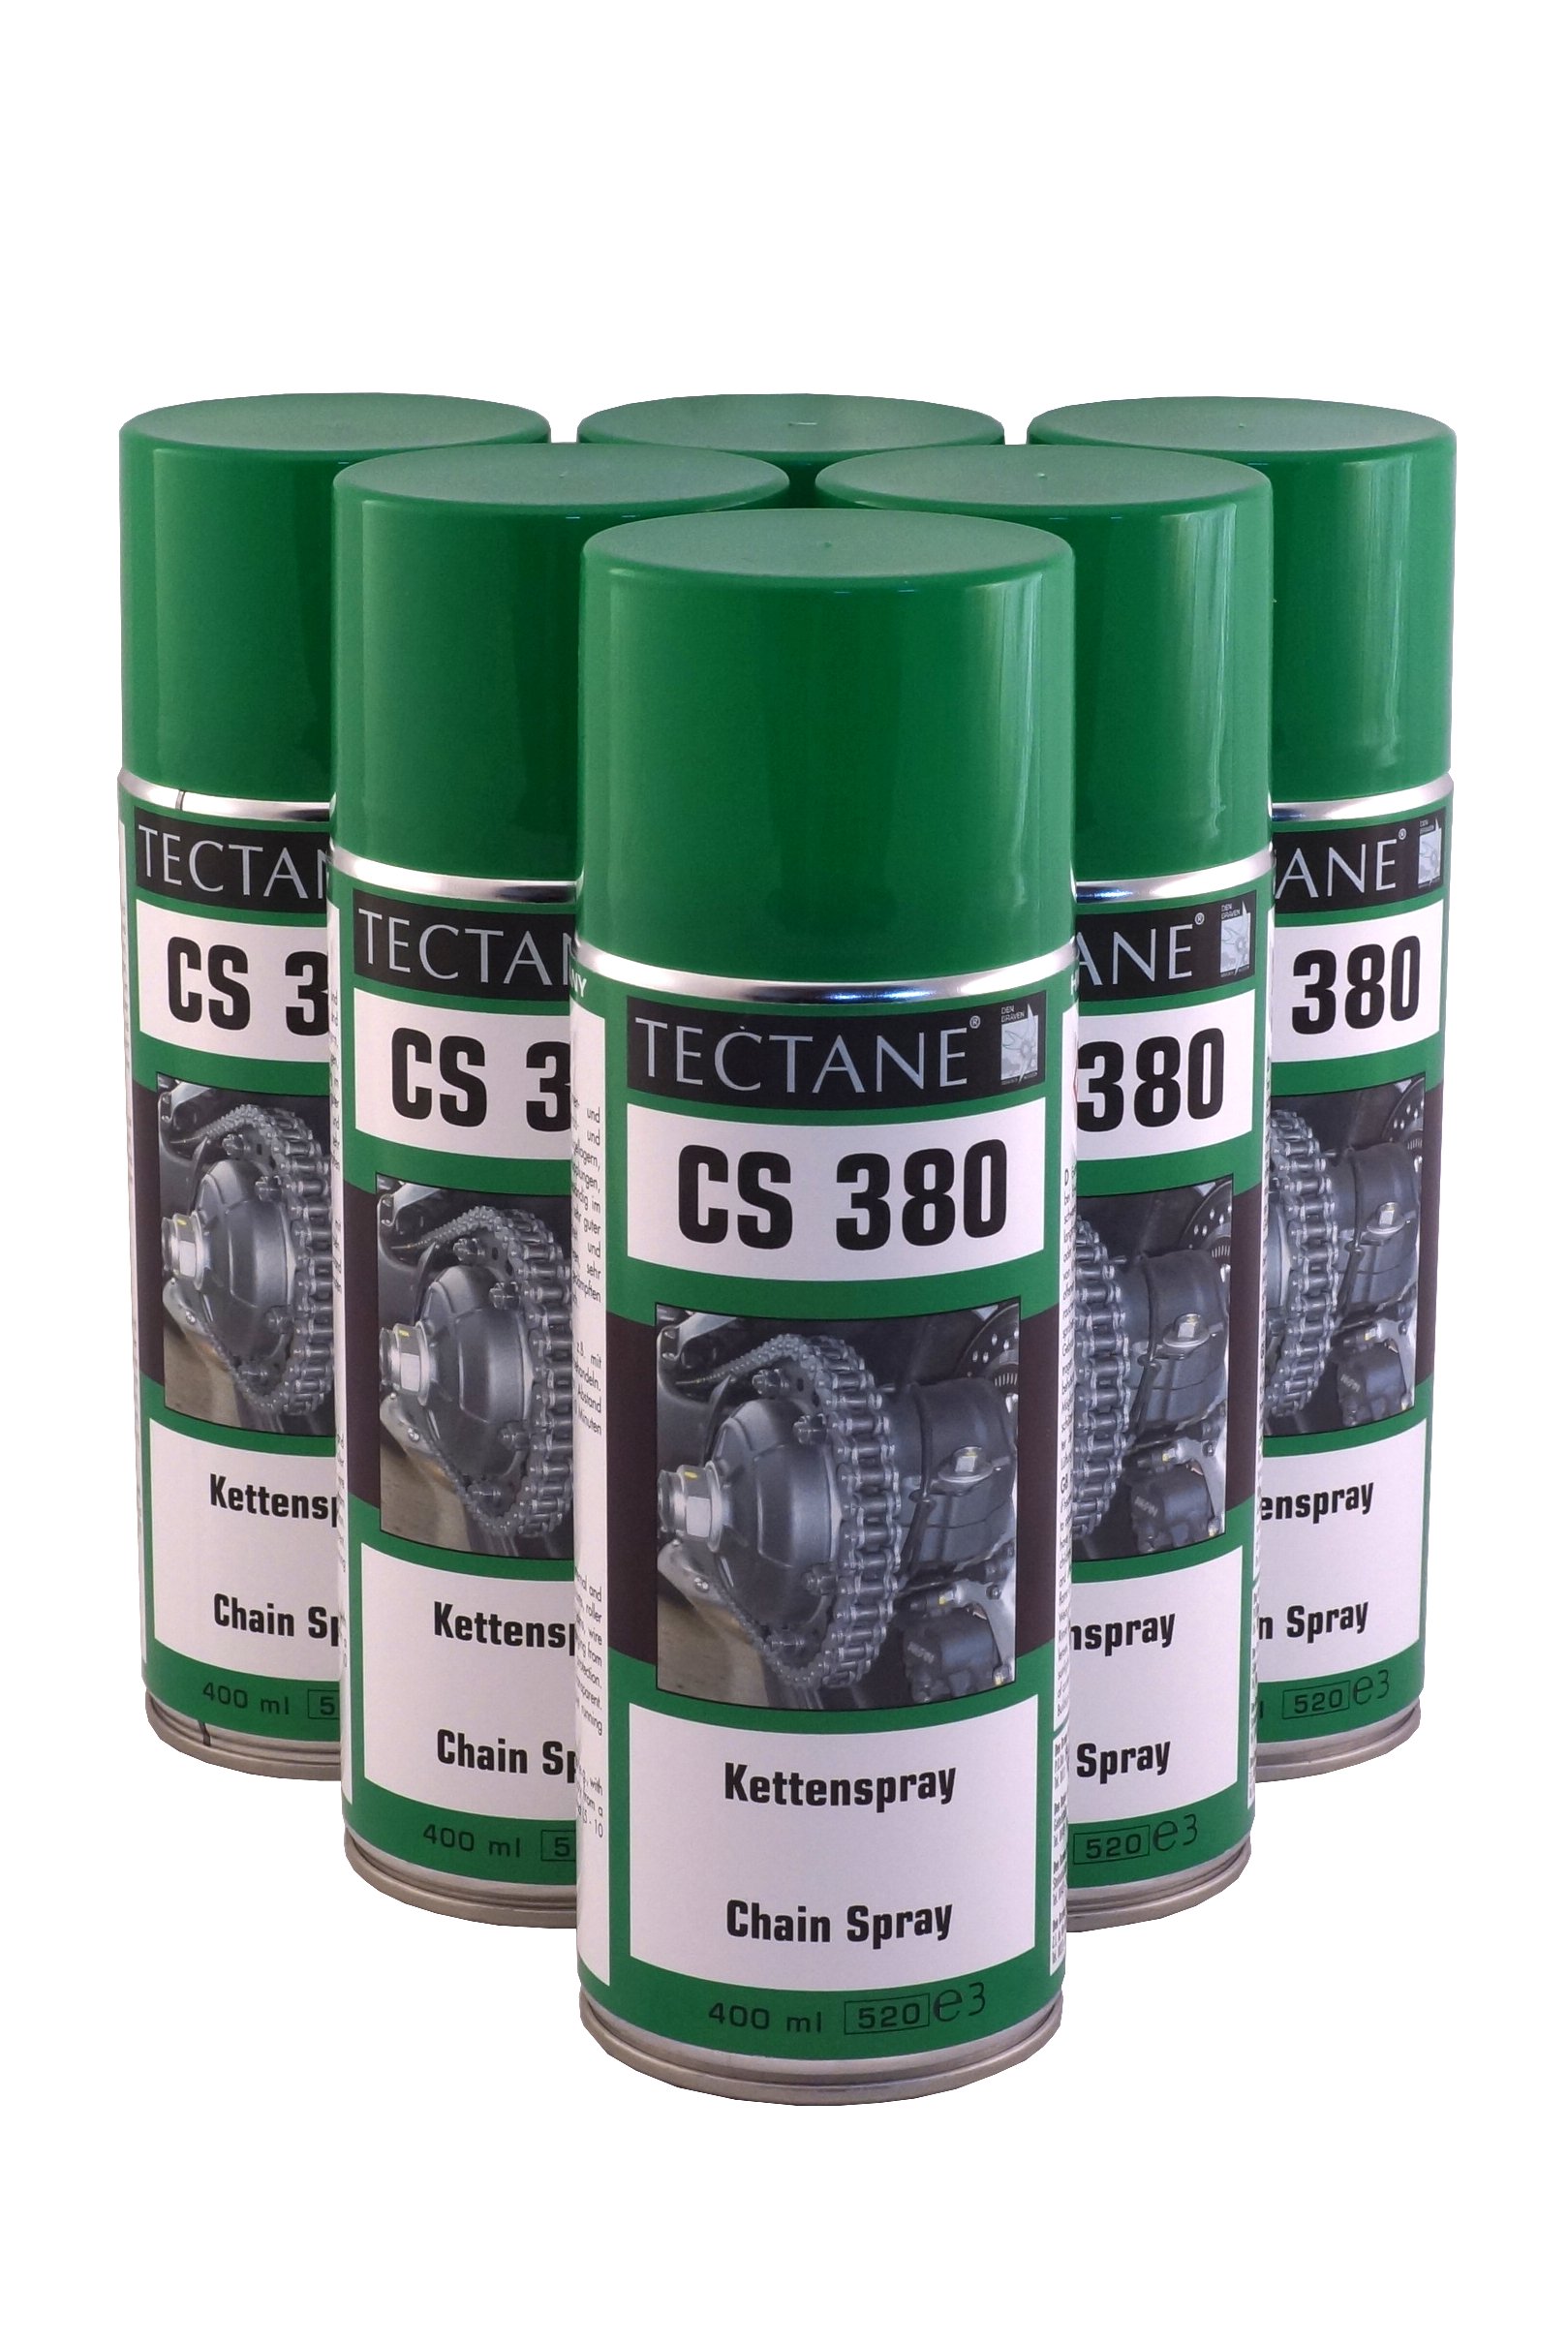 TECTANE Kettenspray CS380 6X 400ml von TECTANE